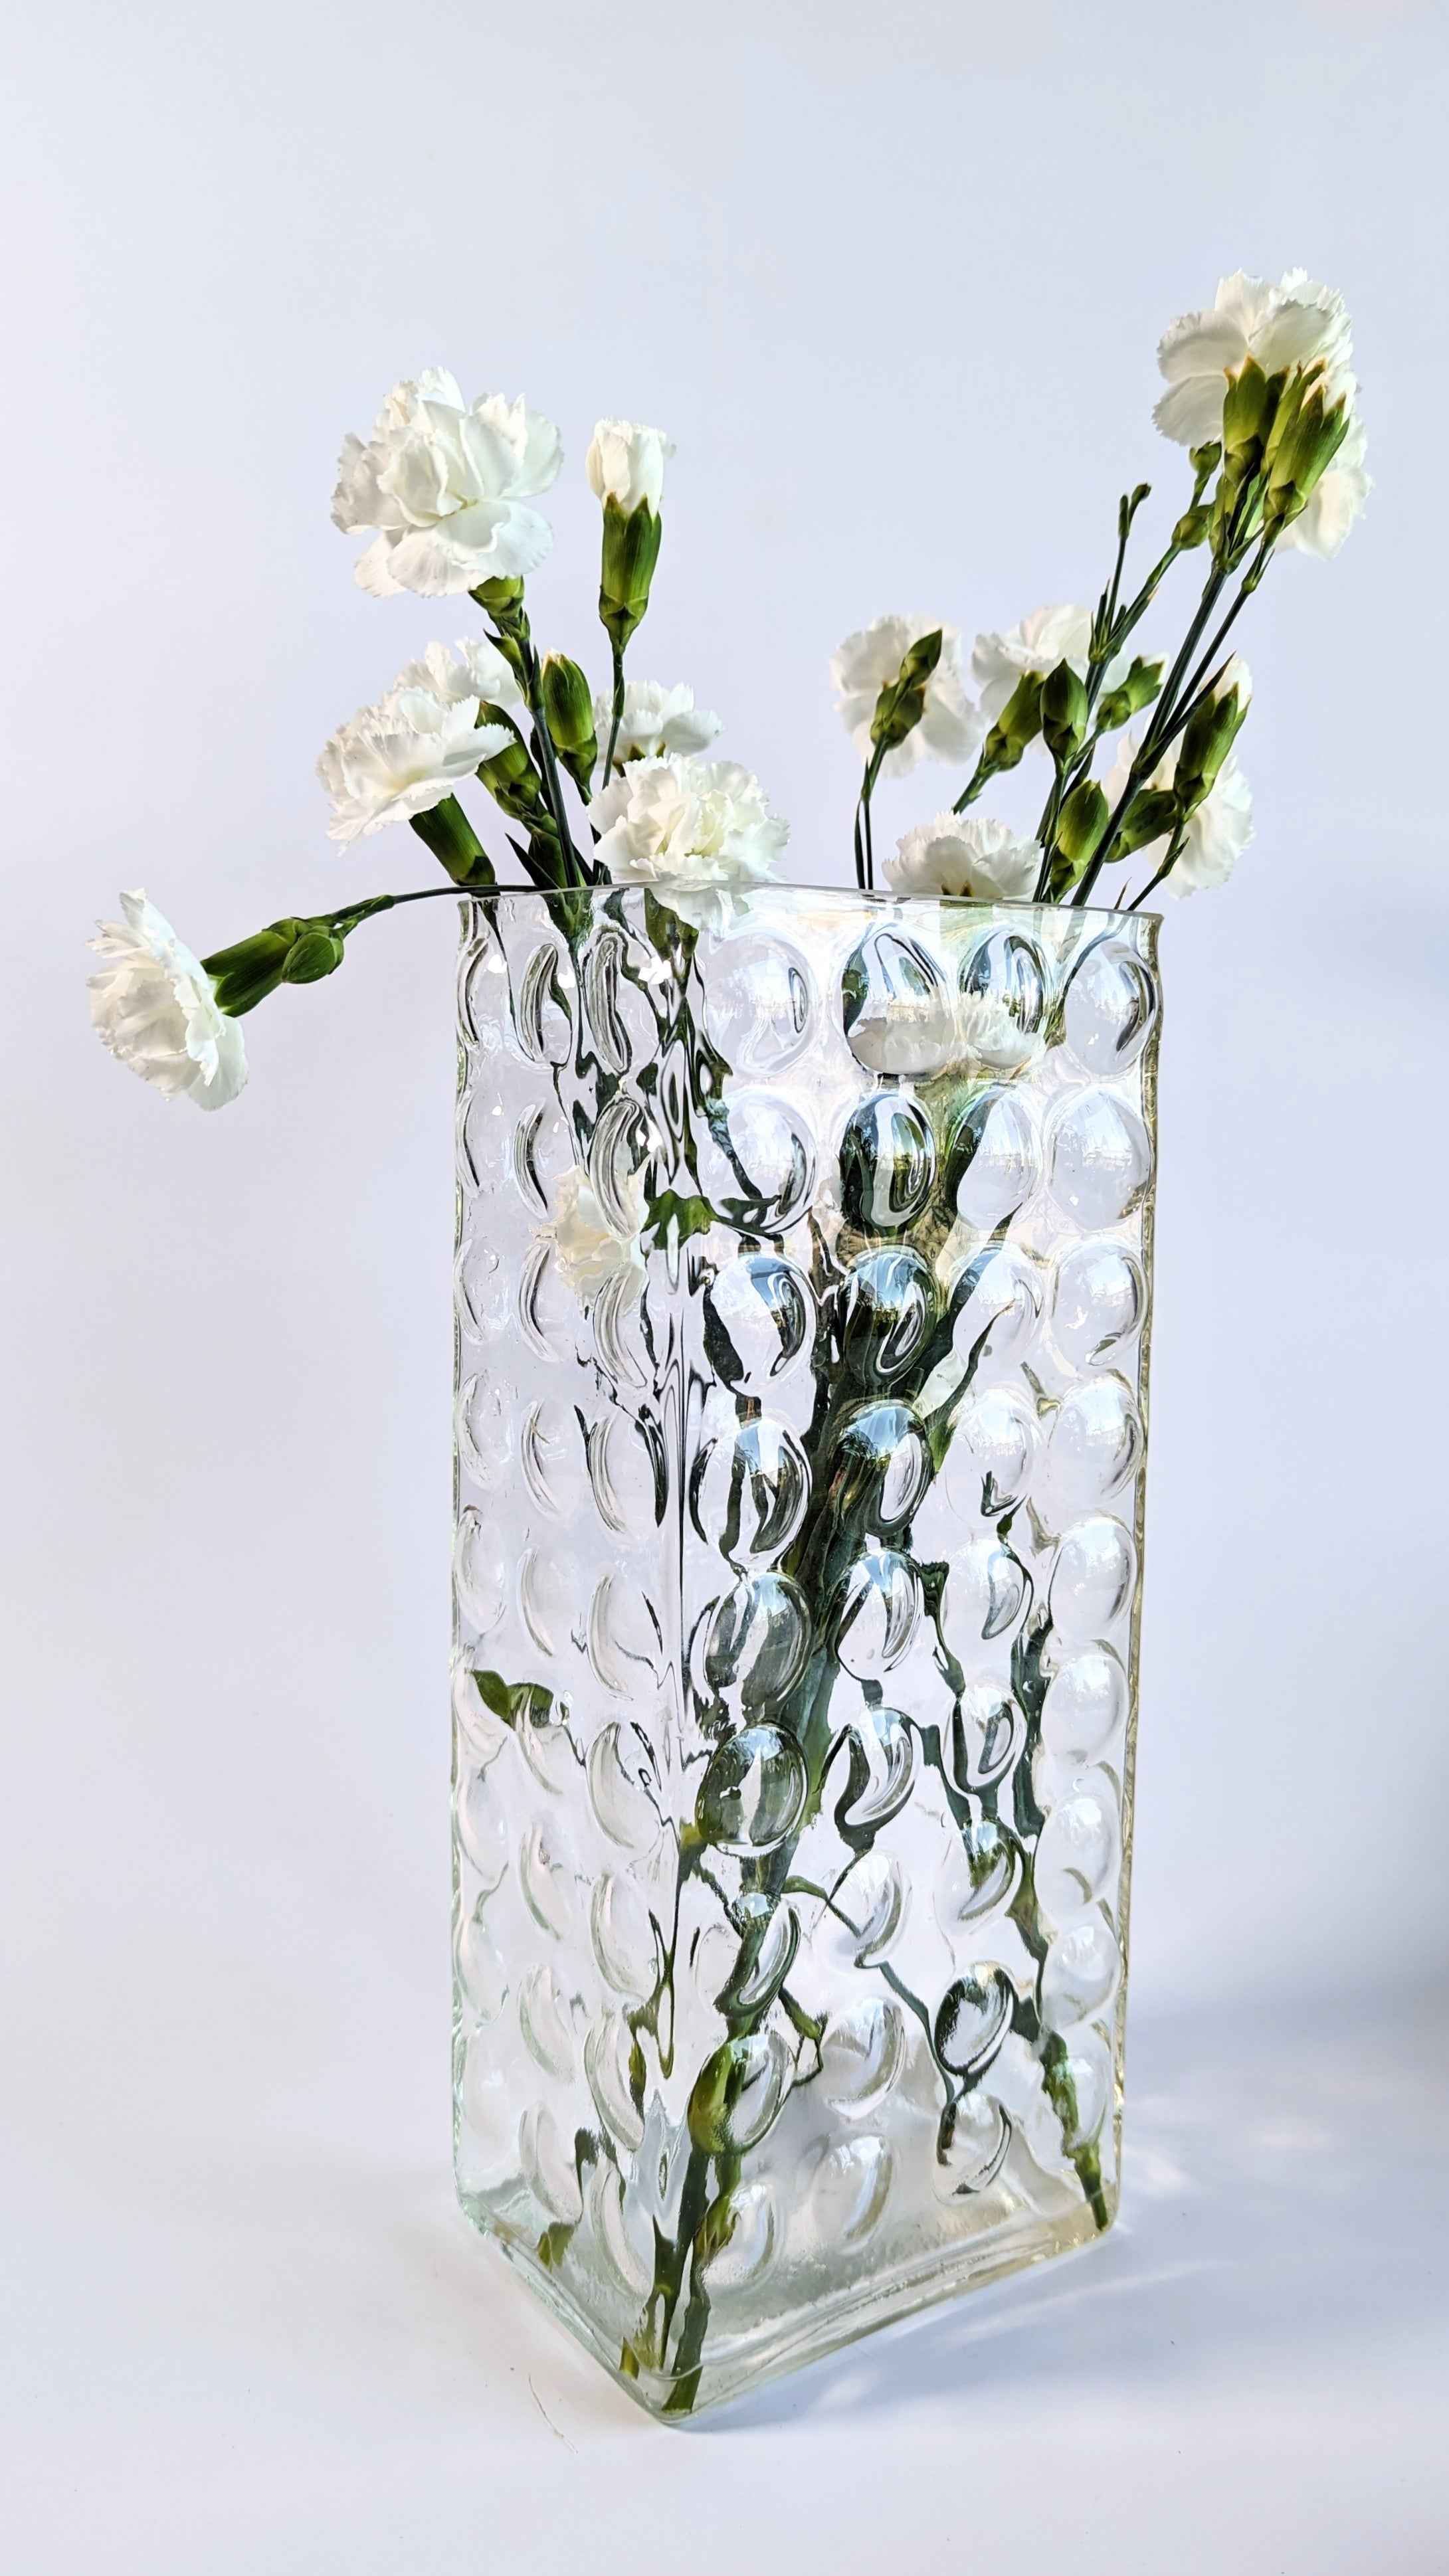 Vintage Bubble Glass Block Vase